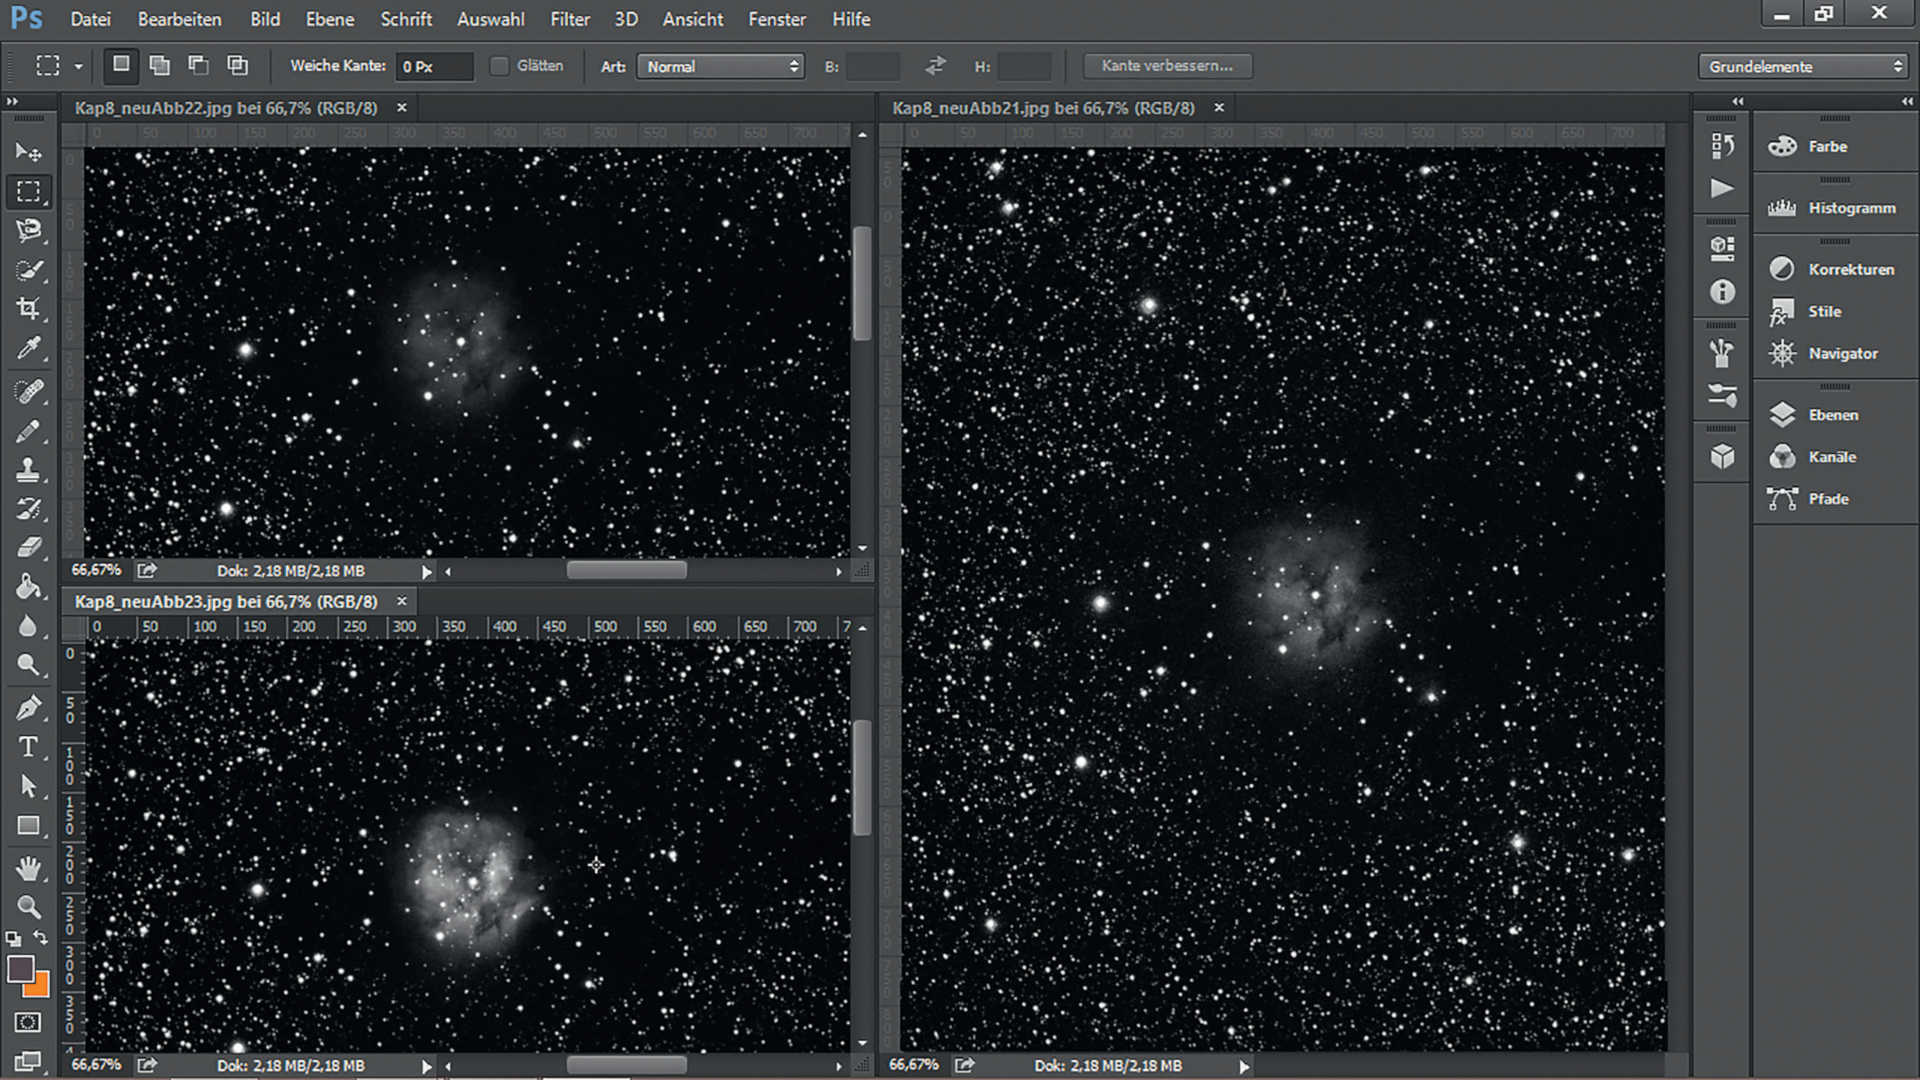 La nebulosa Cocoon (IC5146) nella costellazione del Cigno: otto scatti singoli con filtro rosso, verde e blu, sono stati orientati, sommati e intesificati nel contrasto per ottenere l’immagine finale. Camera SBIG STF-8300 su astrografo 200/600 mm, tempo di esposizione totale: 72 minuti, filtri RGB. U. Dittler